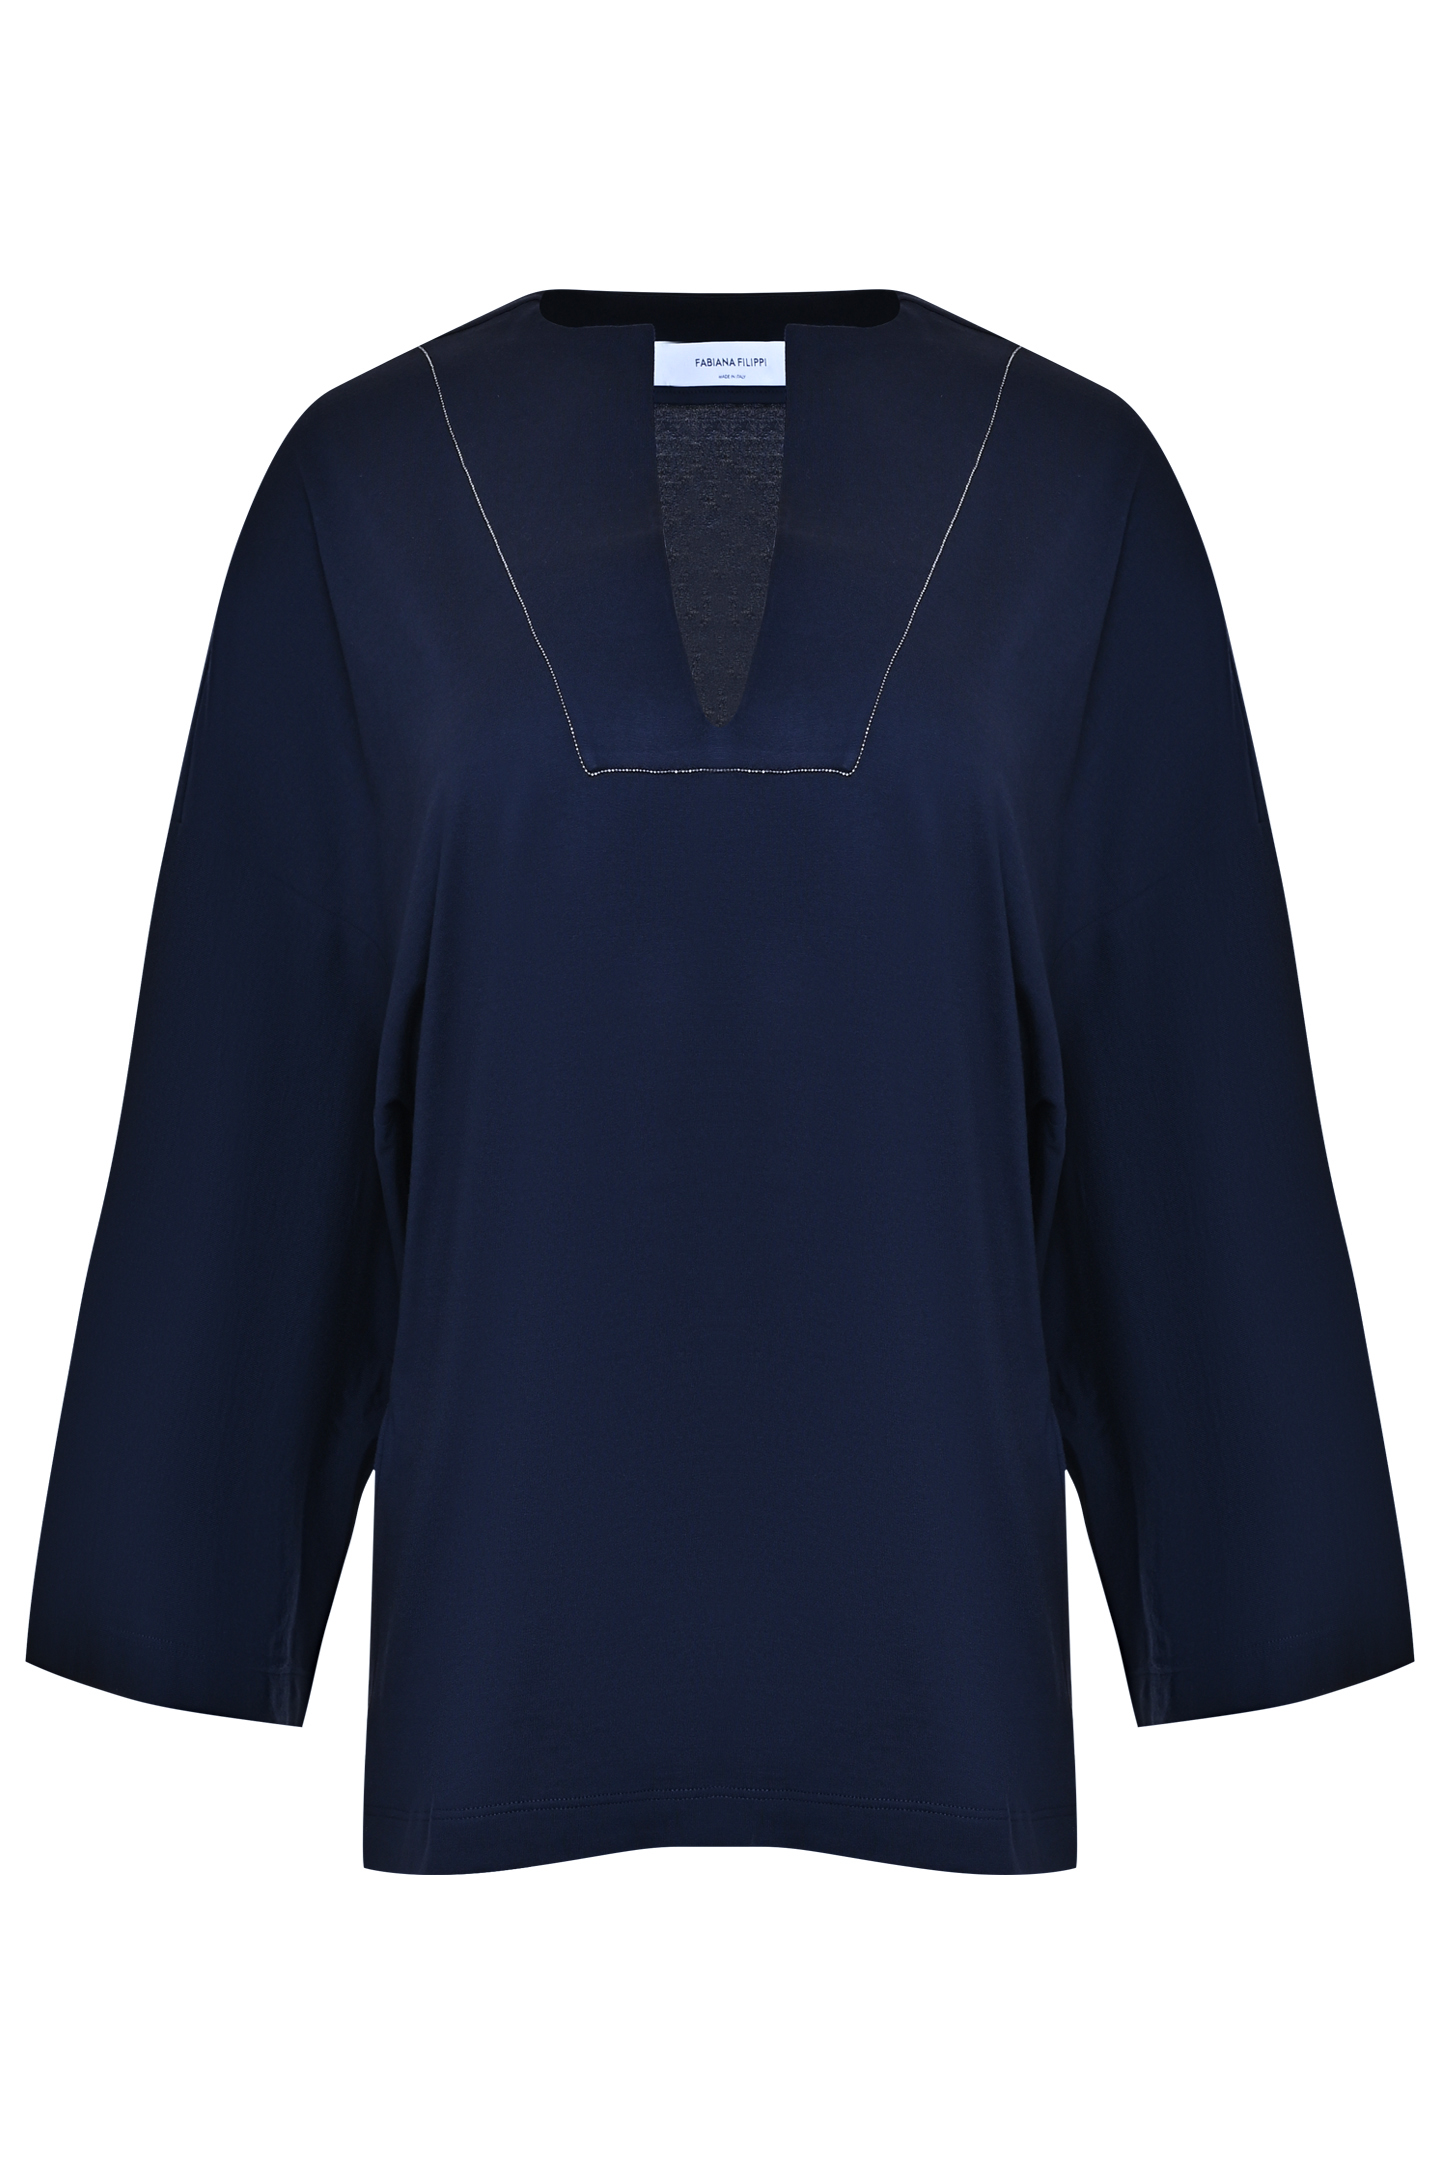 Блуза FABIANA FILIPPI JED273W136D323, цвет: Синий, Женский